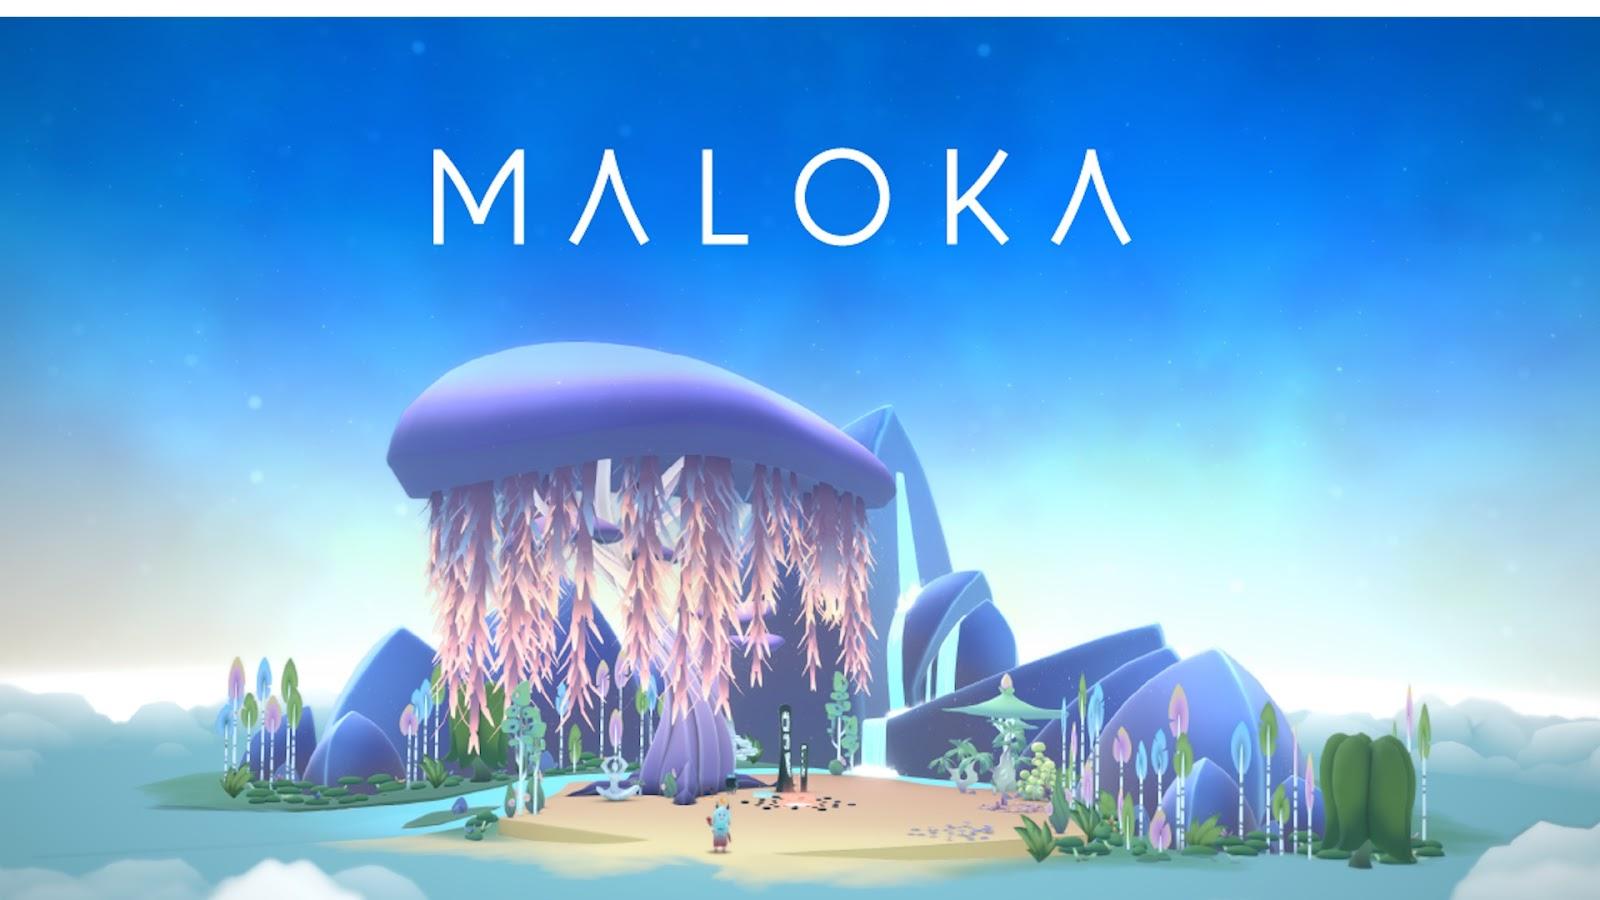 Representative image for Maloka, a gaming startup